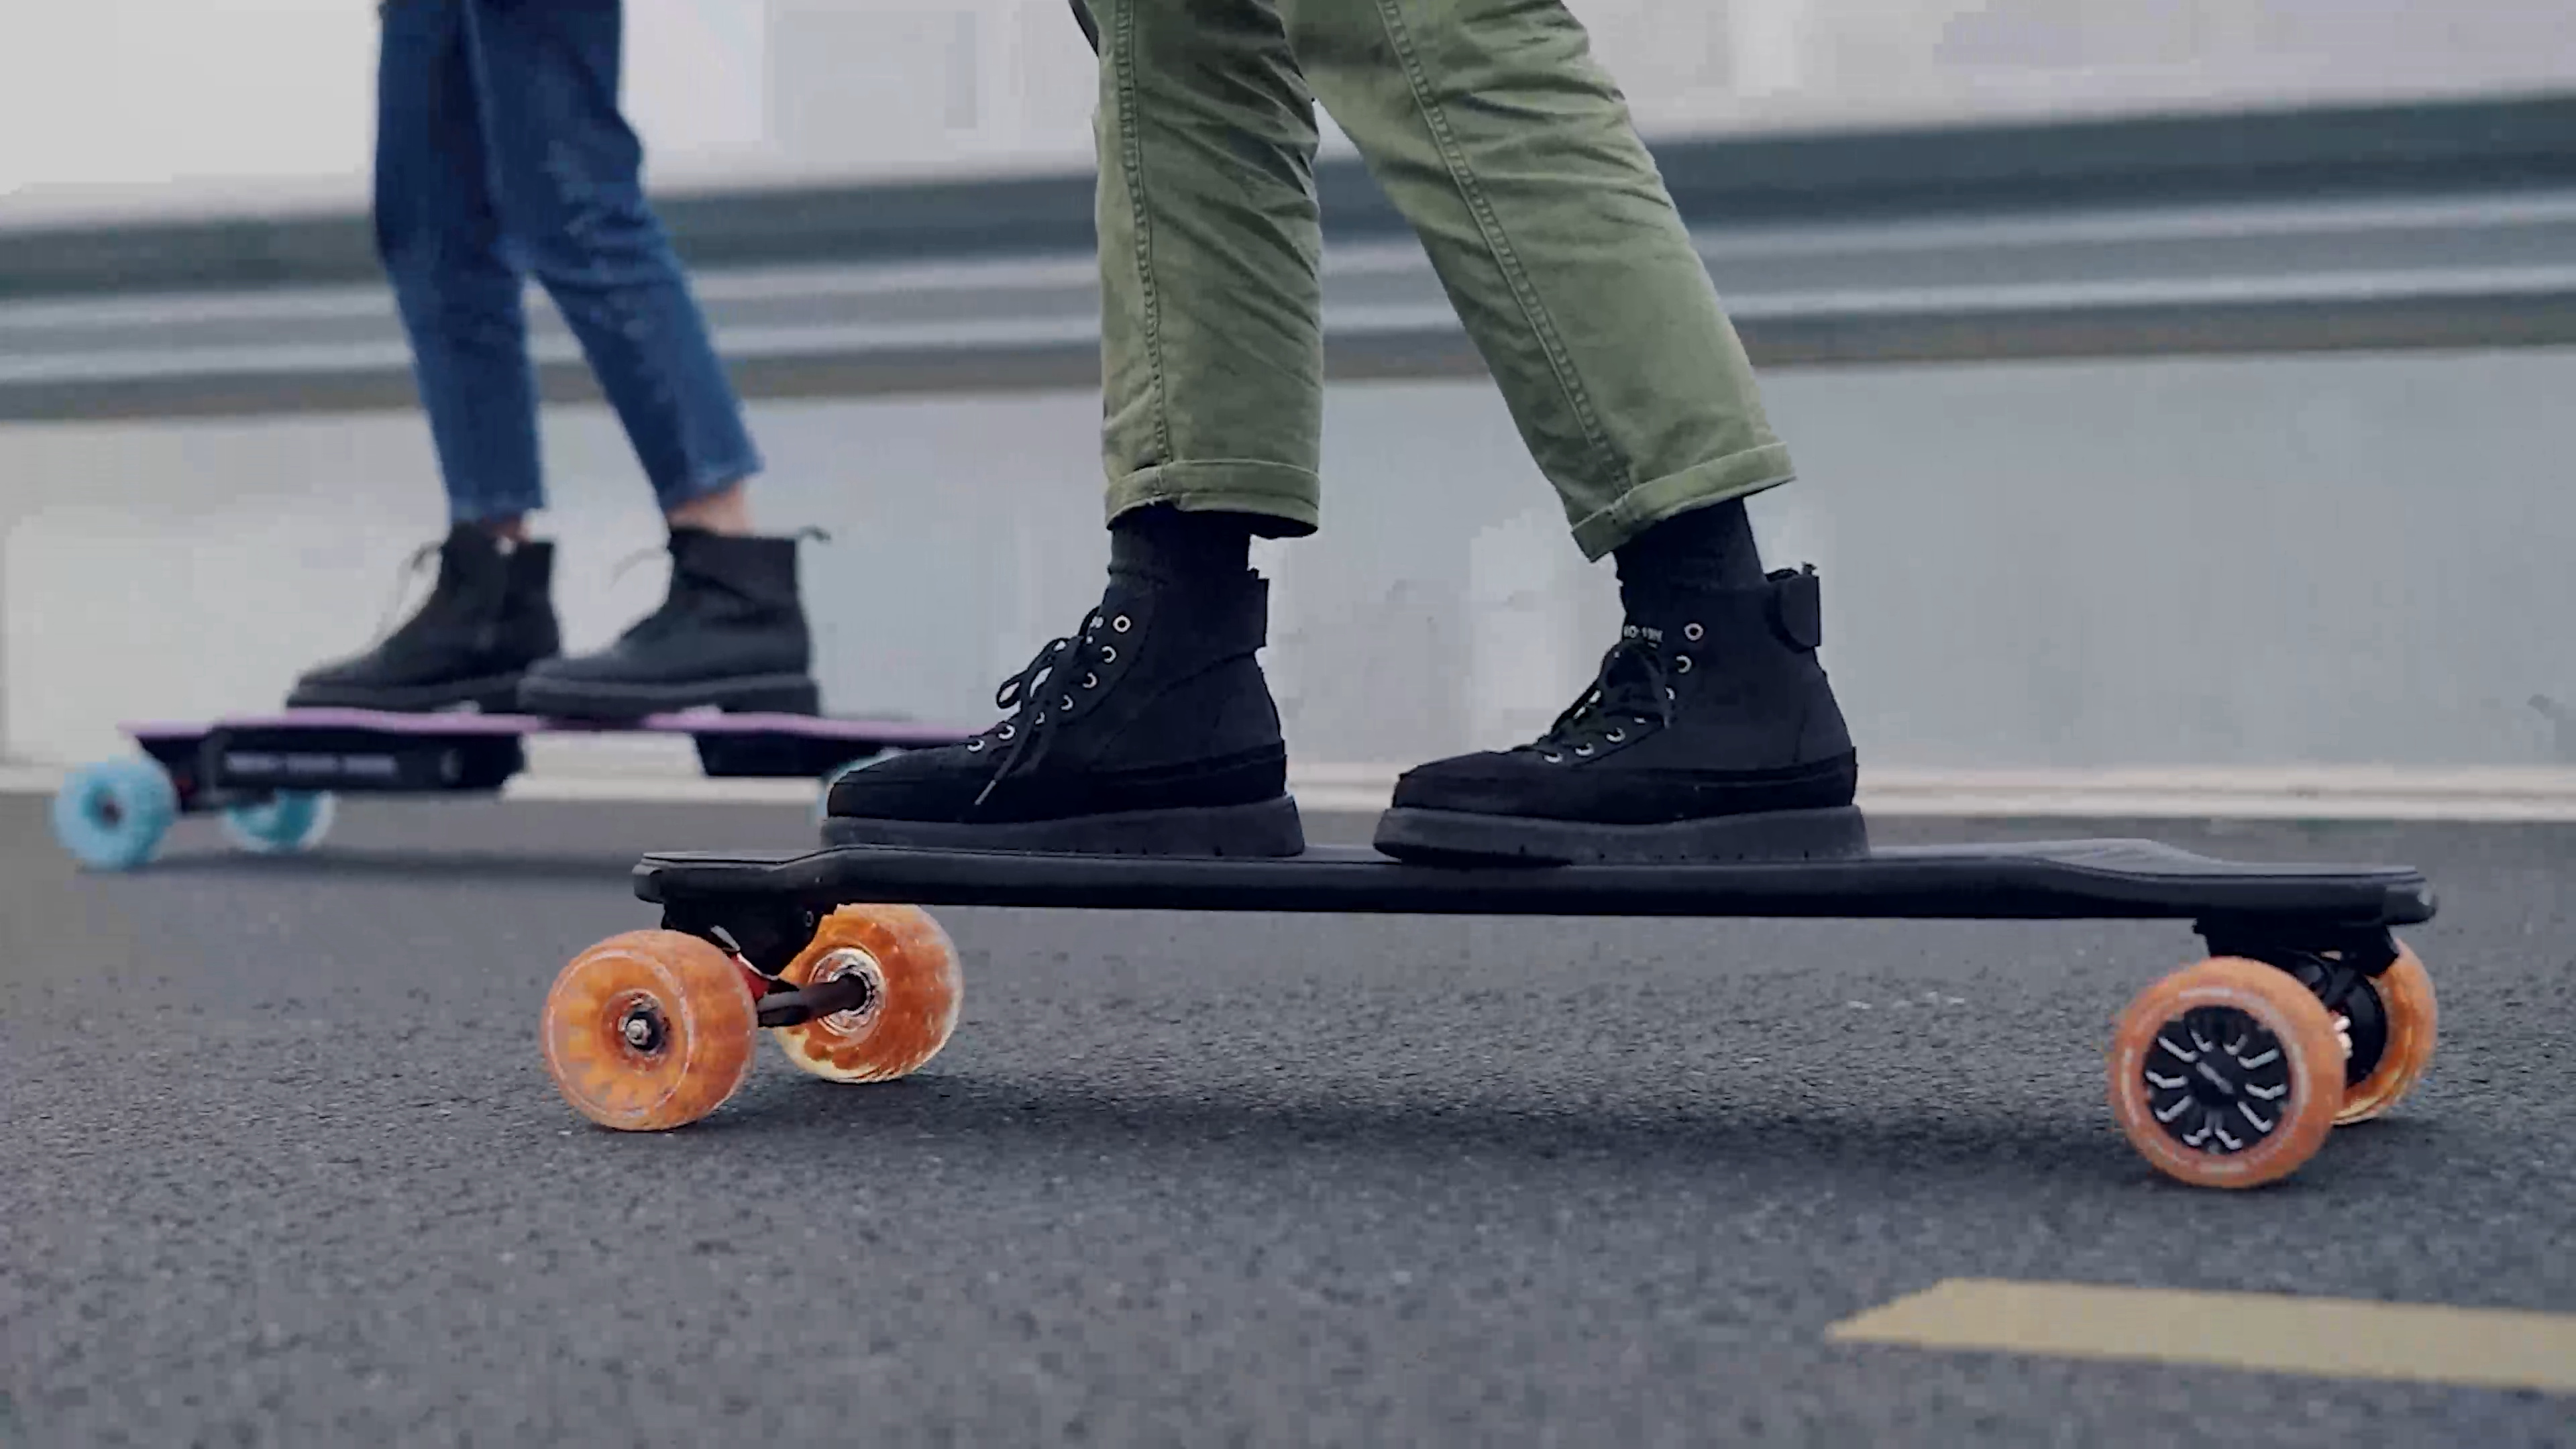 Electric skateboard longboard, Damping foamies core, All terrain wheels, Blue edition, 3840x2160 4K Desktop